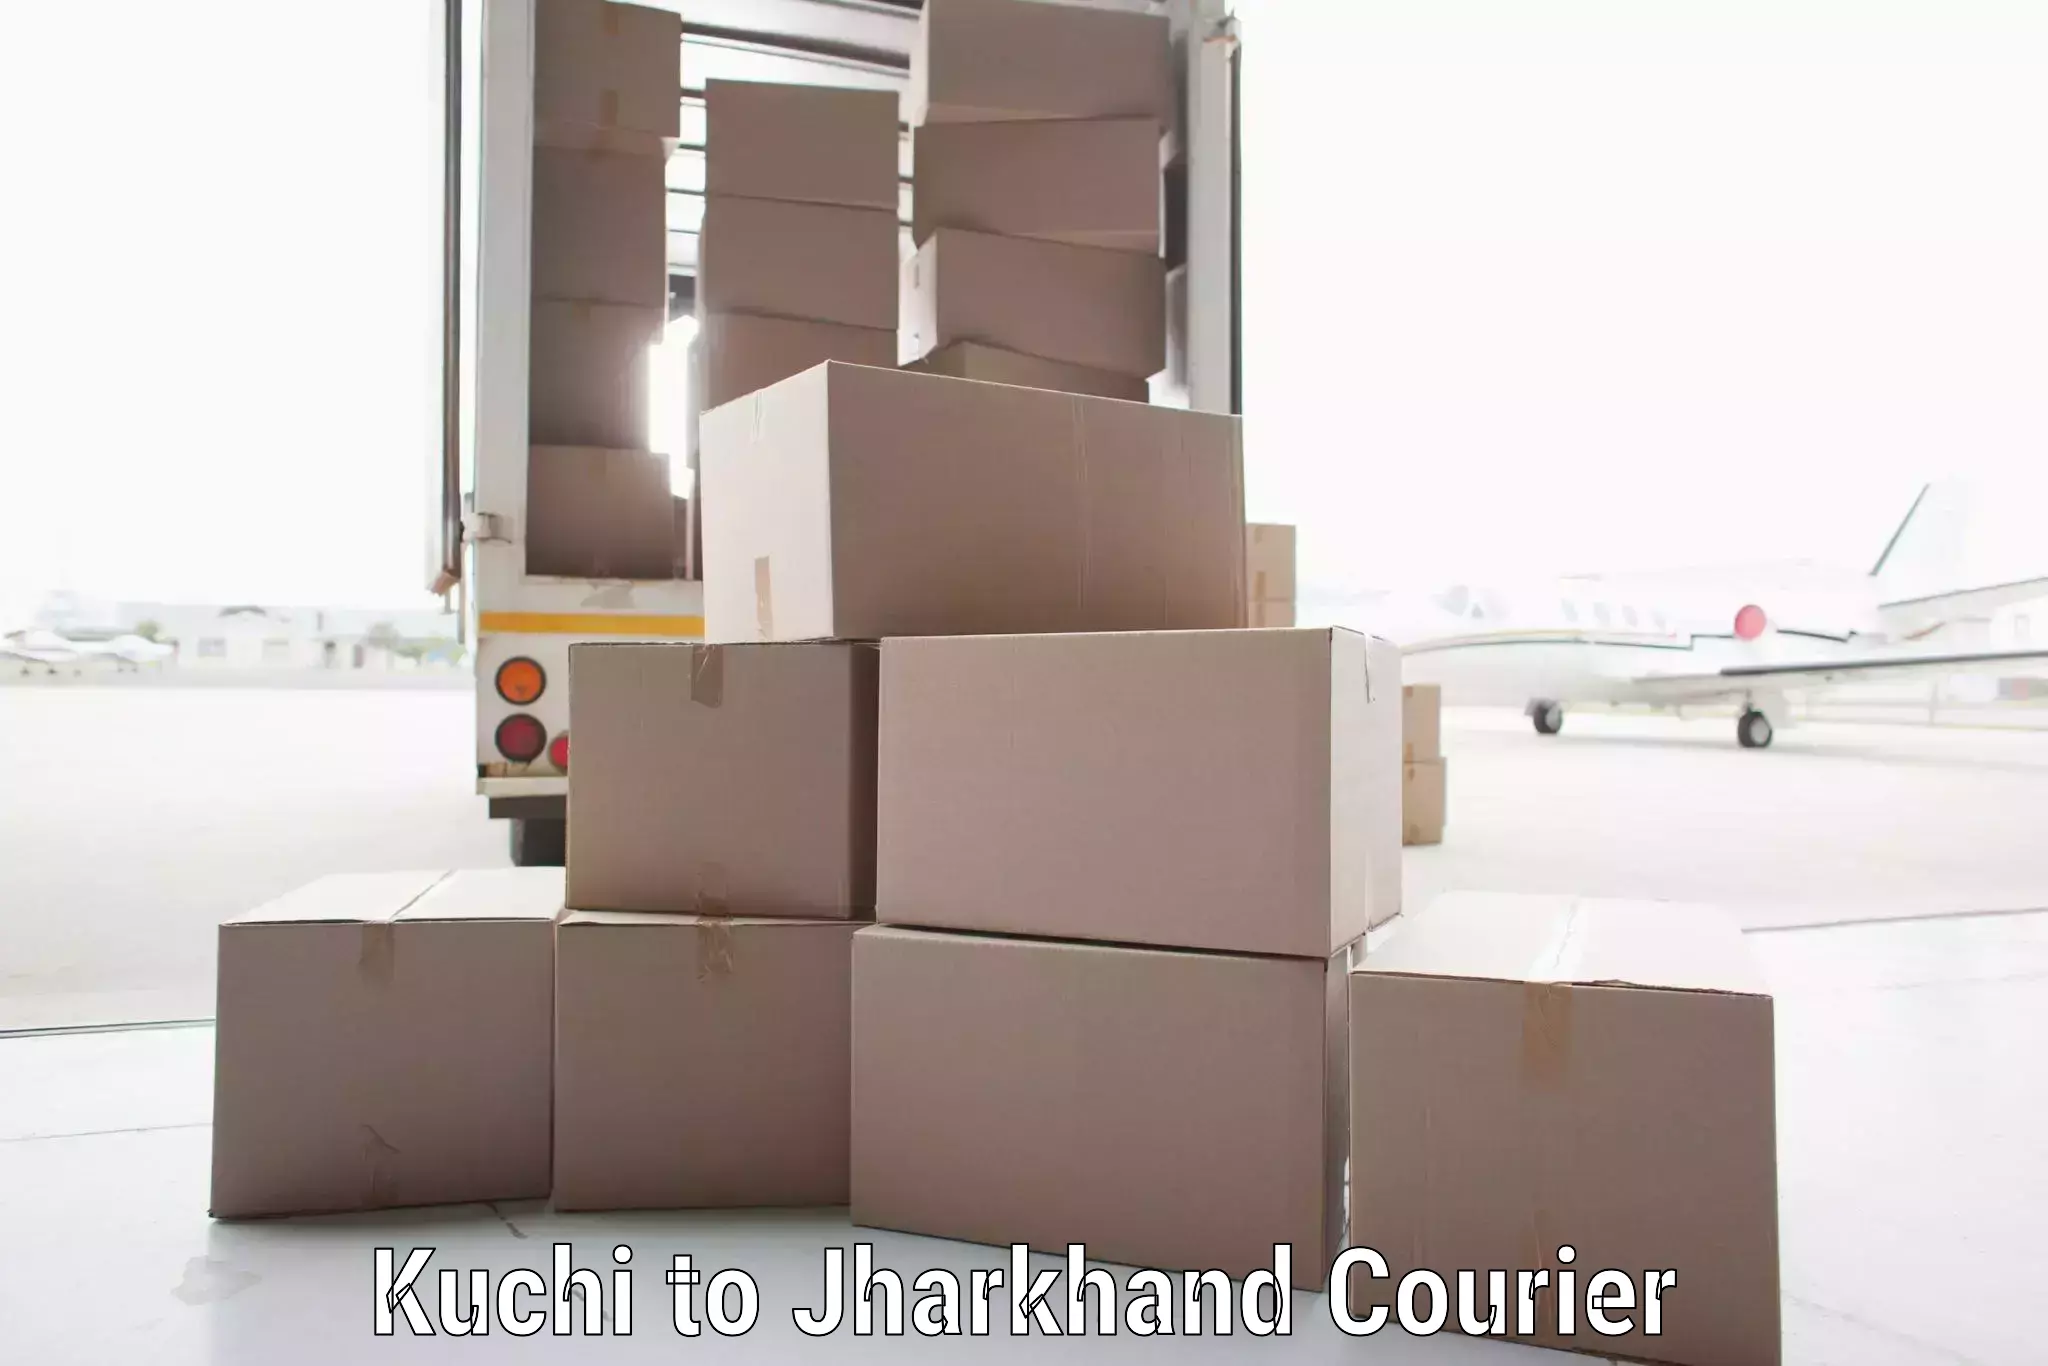 Express delivery solutions Kuchi to Panki Palamu